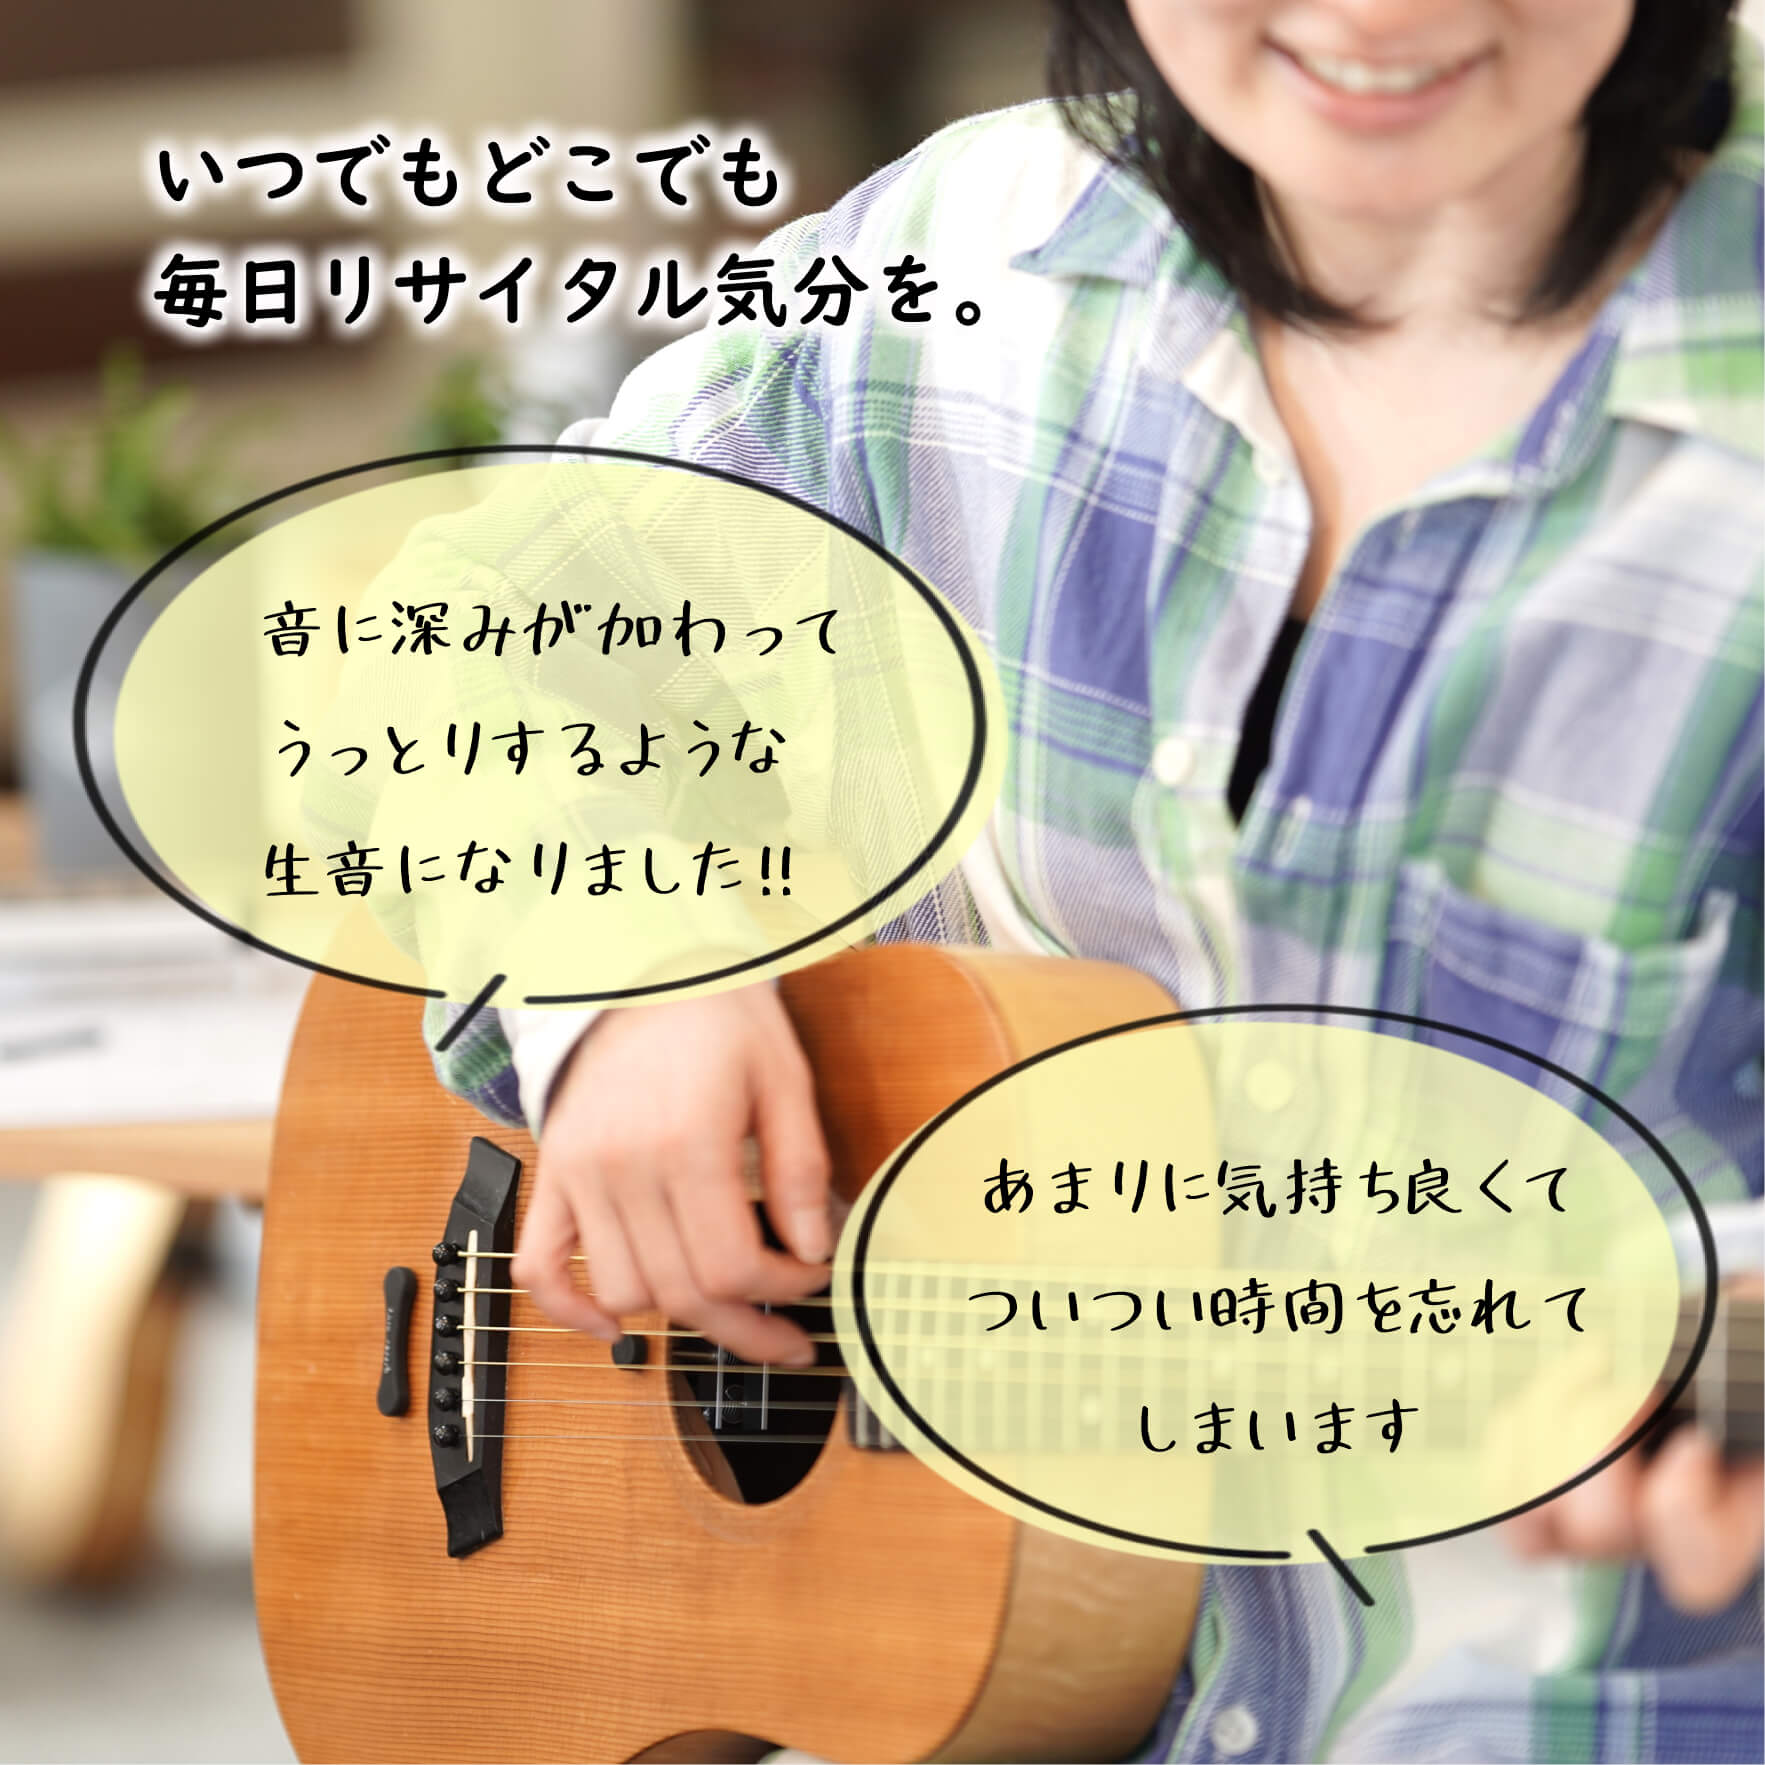 アコースティックギター用 natu-reverb AC-1 MAX